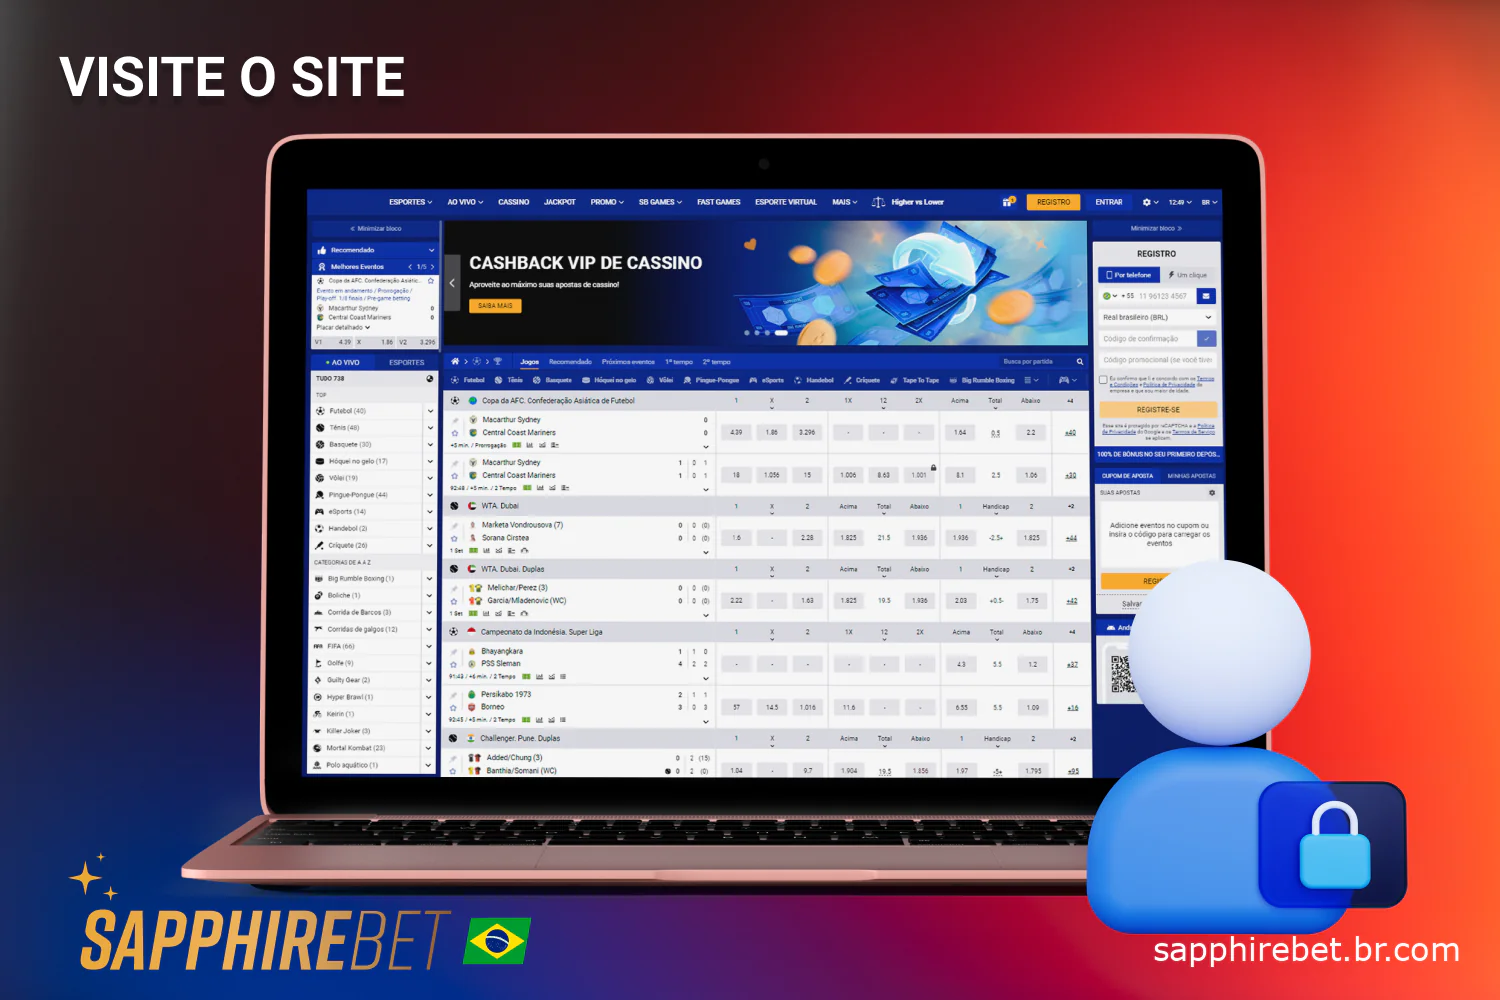 Para acessar a extensa lista de opções de apostas, os usuários brasileiros devem acessar o site da Sapphirebet